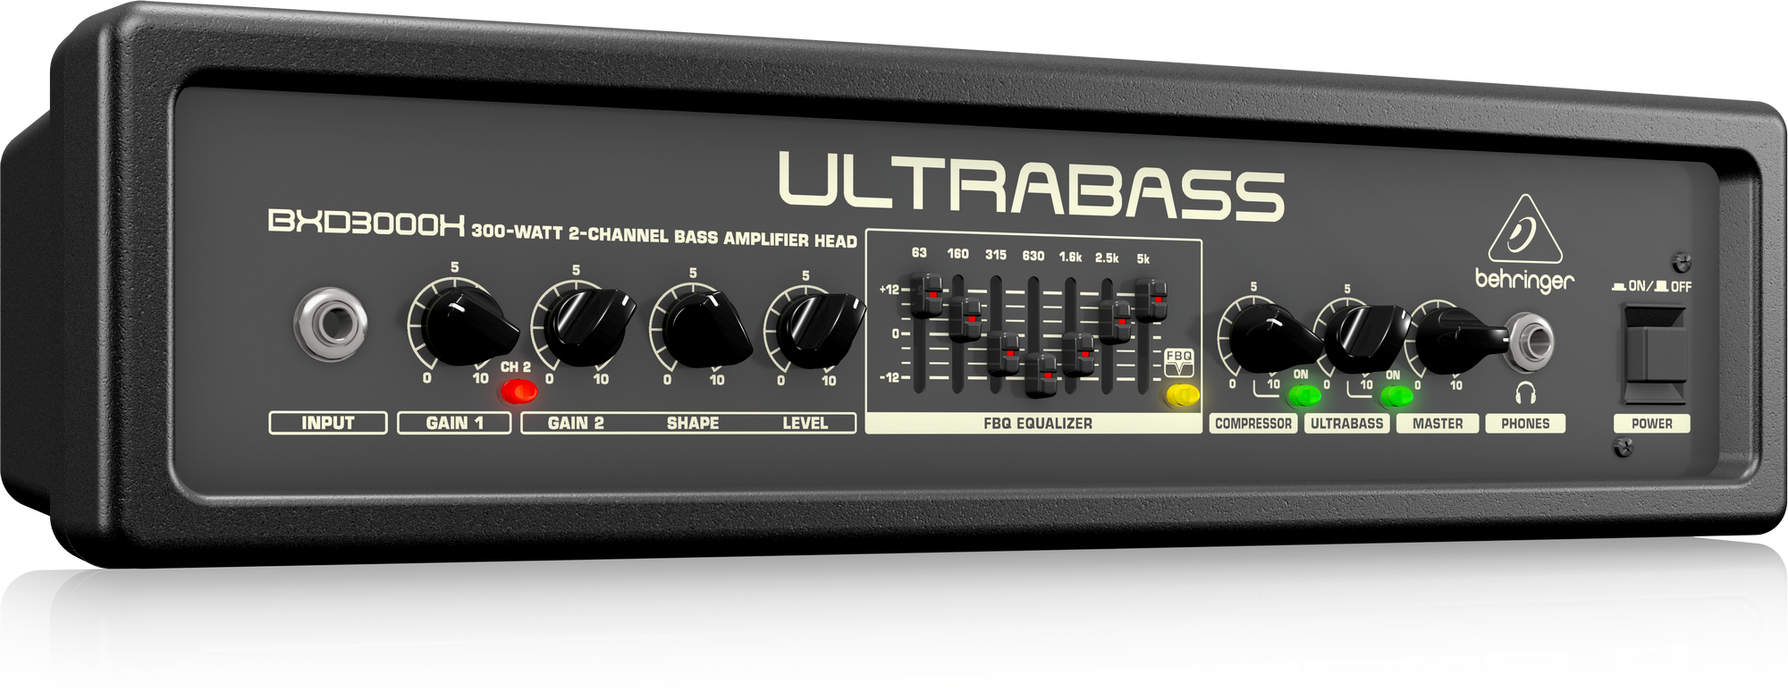 Behringer UltraBass BXD3000H Ultra-Lightweight 300W 2-Channel Bass Amplifier Head with FBQ Spectrum Analyzer, Ultrabass Processor and Compressor